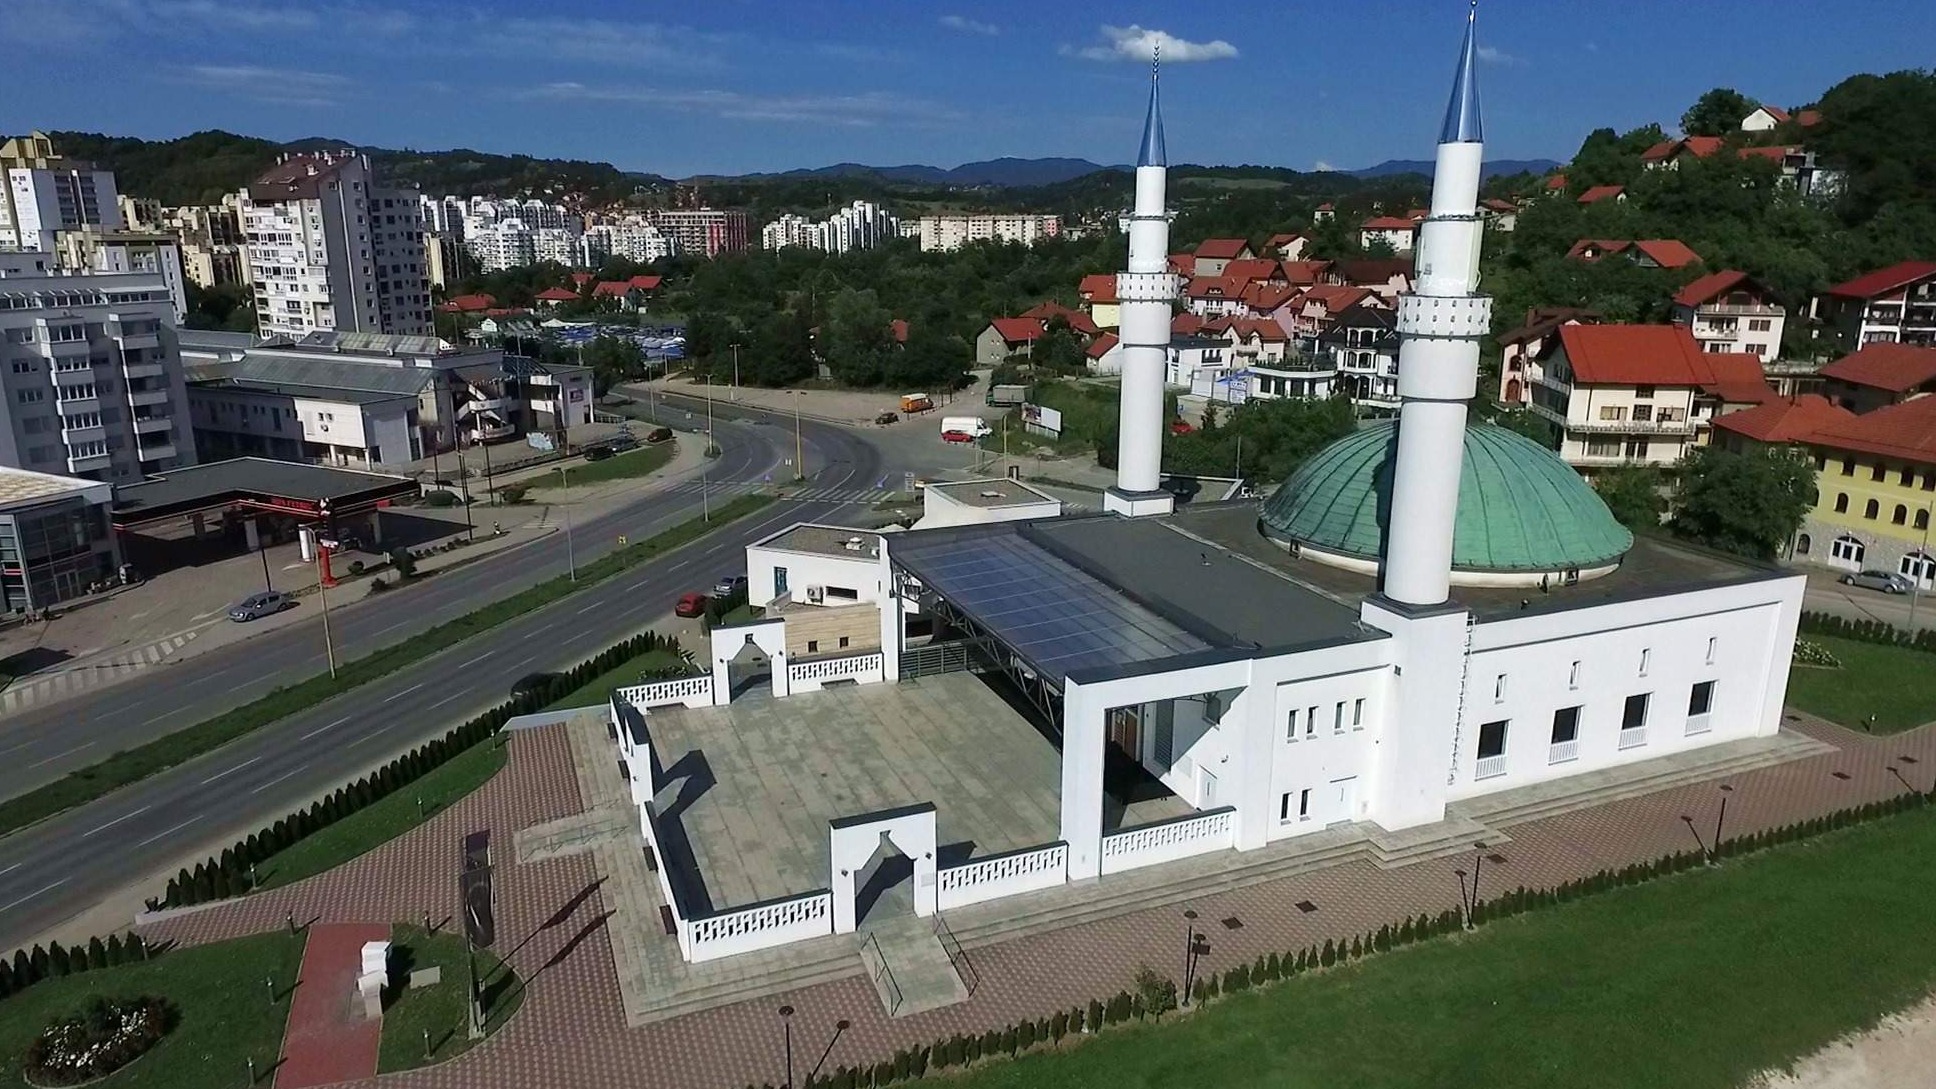 20 godina Kraljeve džamije u Tuzli: Biti najbolji u svemu što radimo